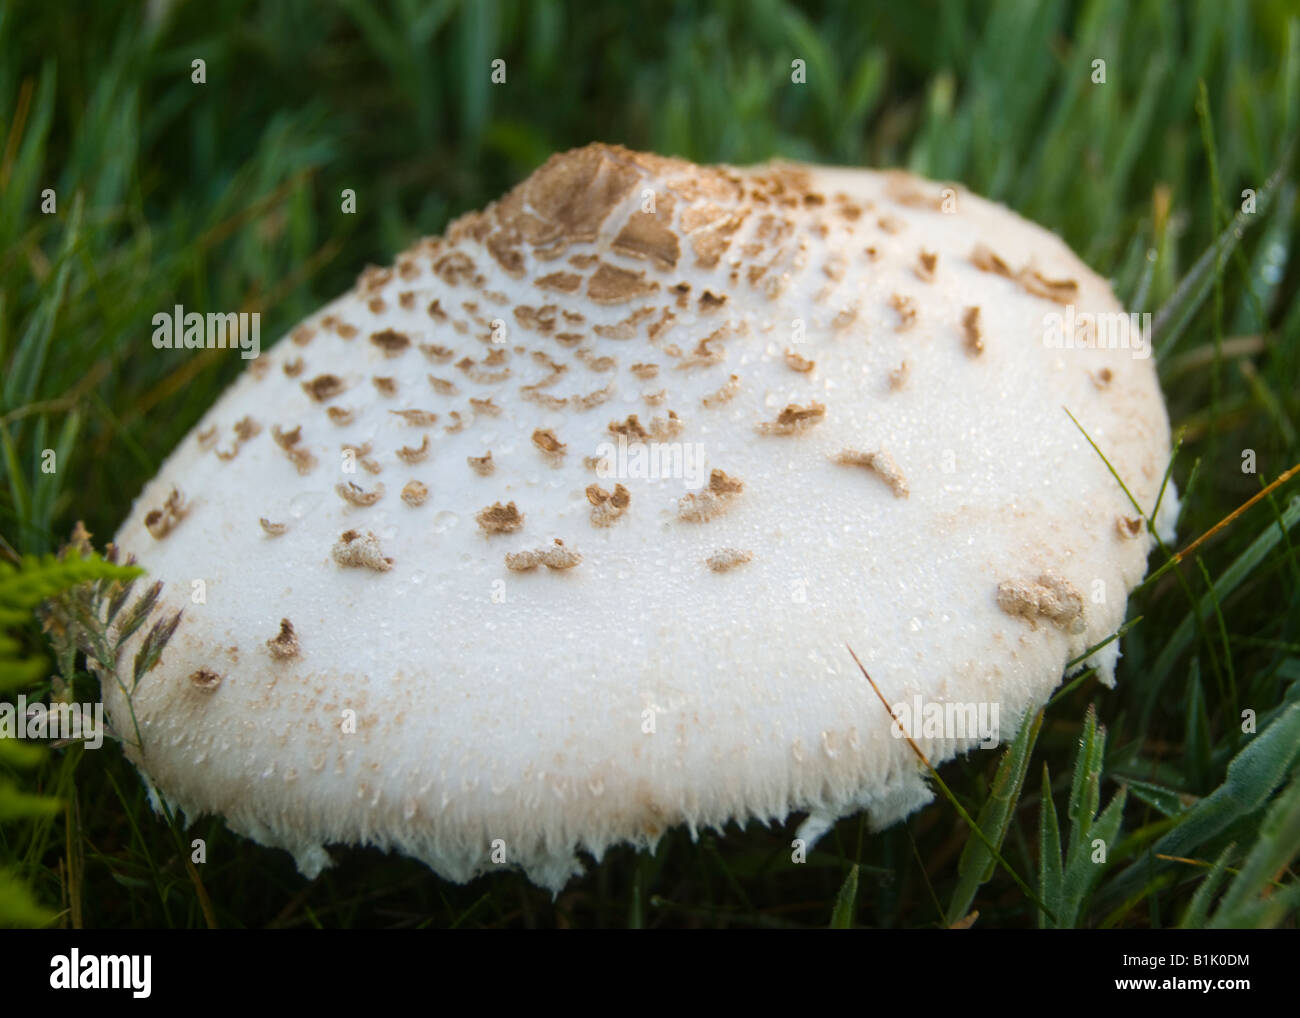 Une culture des champignons sauvages dans la campagne Banque D'Images